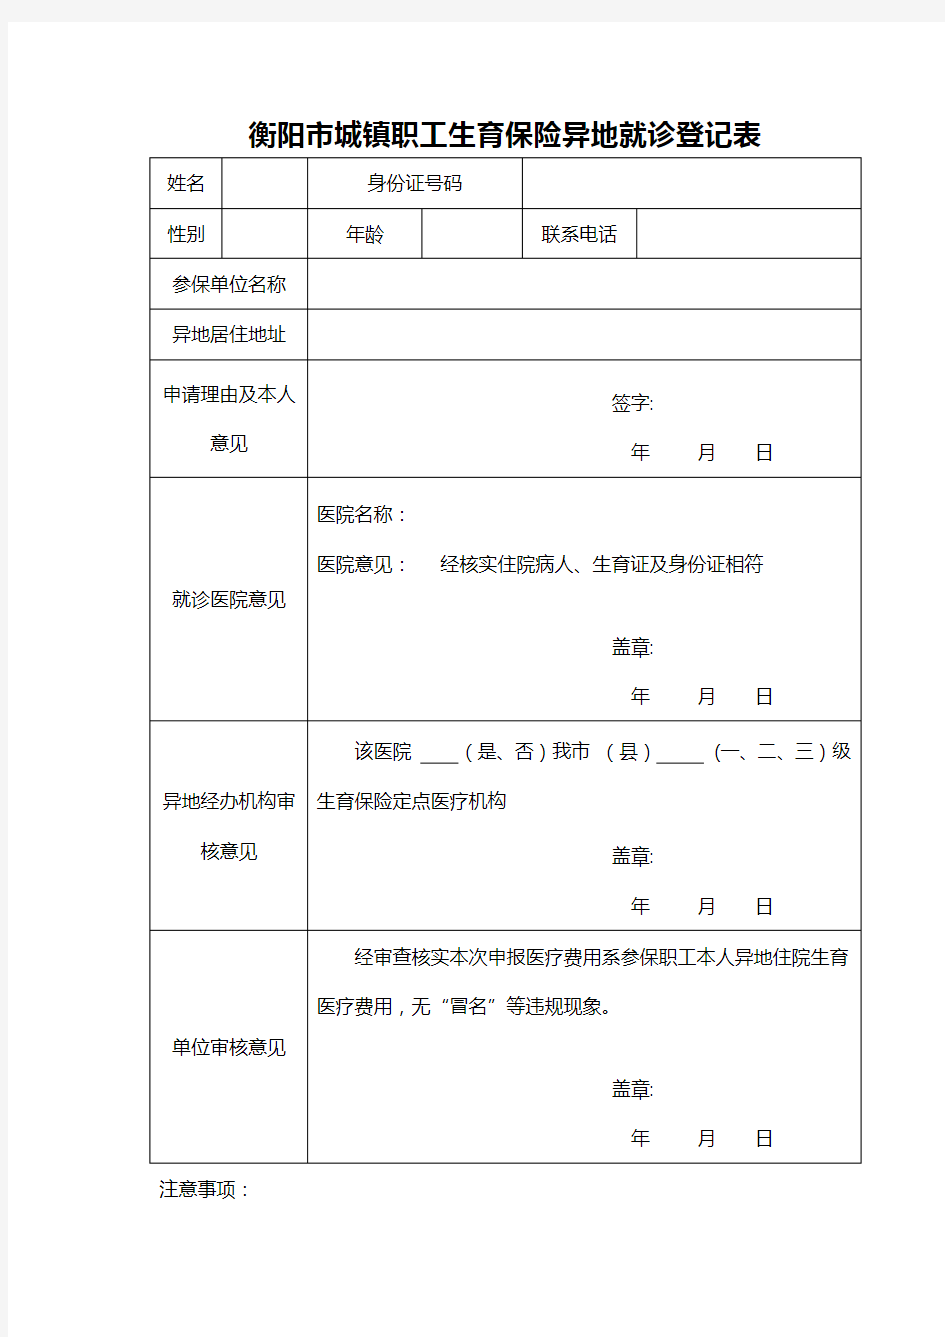 衡阳市城镇职工生育保险异地就诊登记表